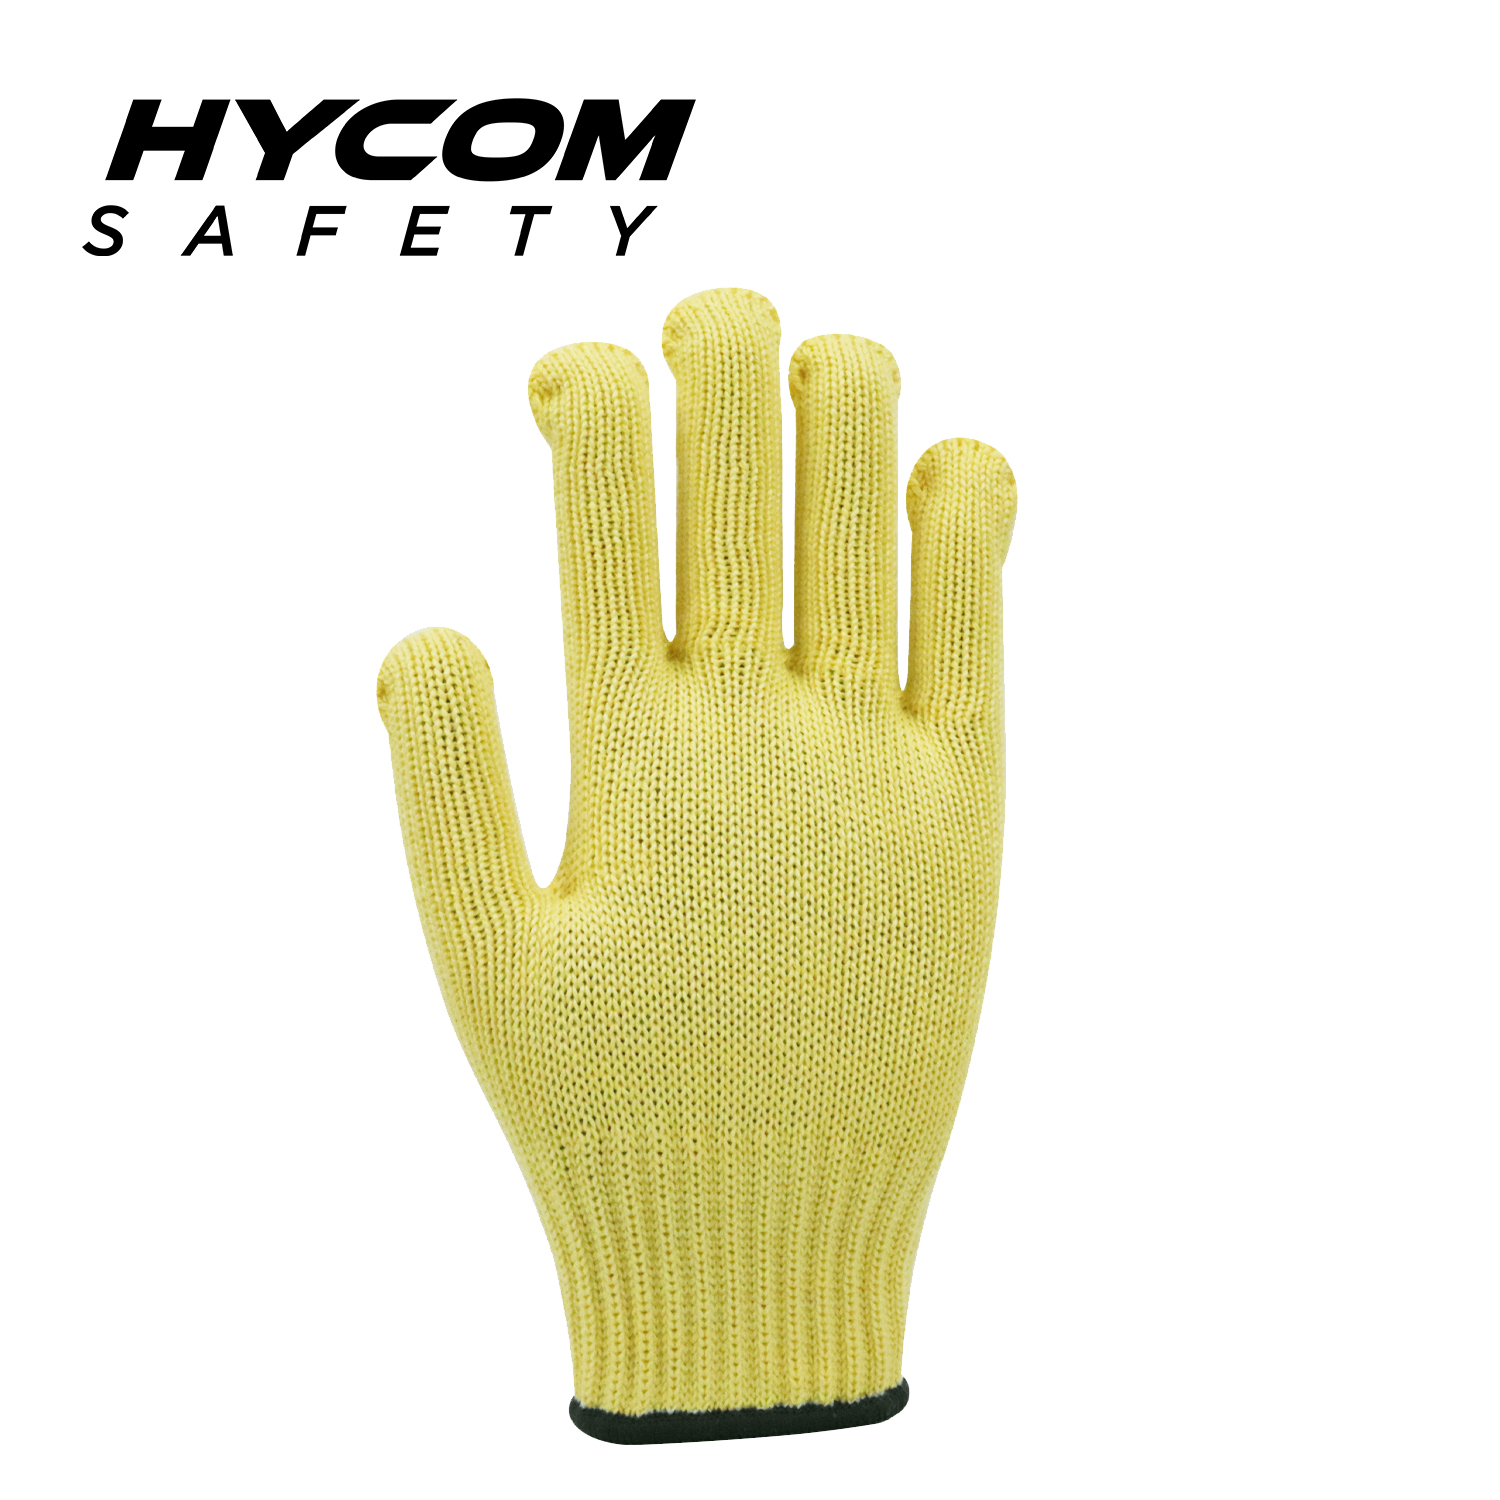 HYCOM 7G ANSI 4 Hitzebeständiger Handschuh, Aramid-Handschuh mit hohem Schnitt